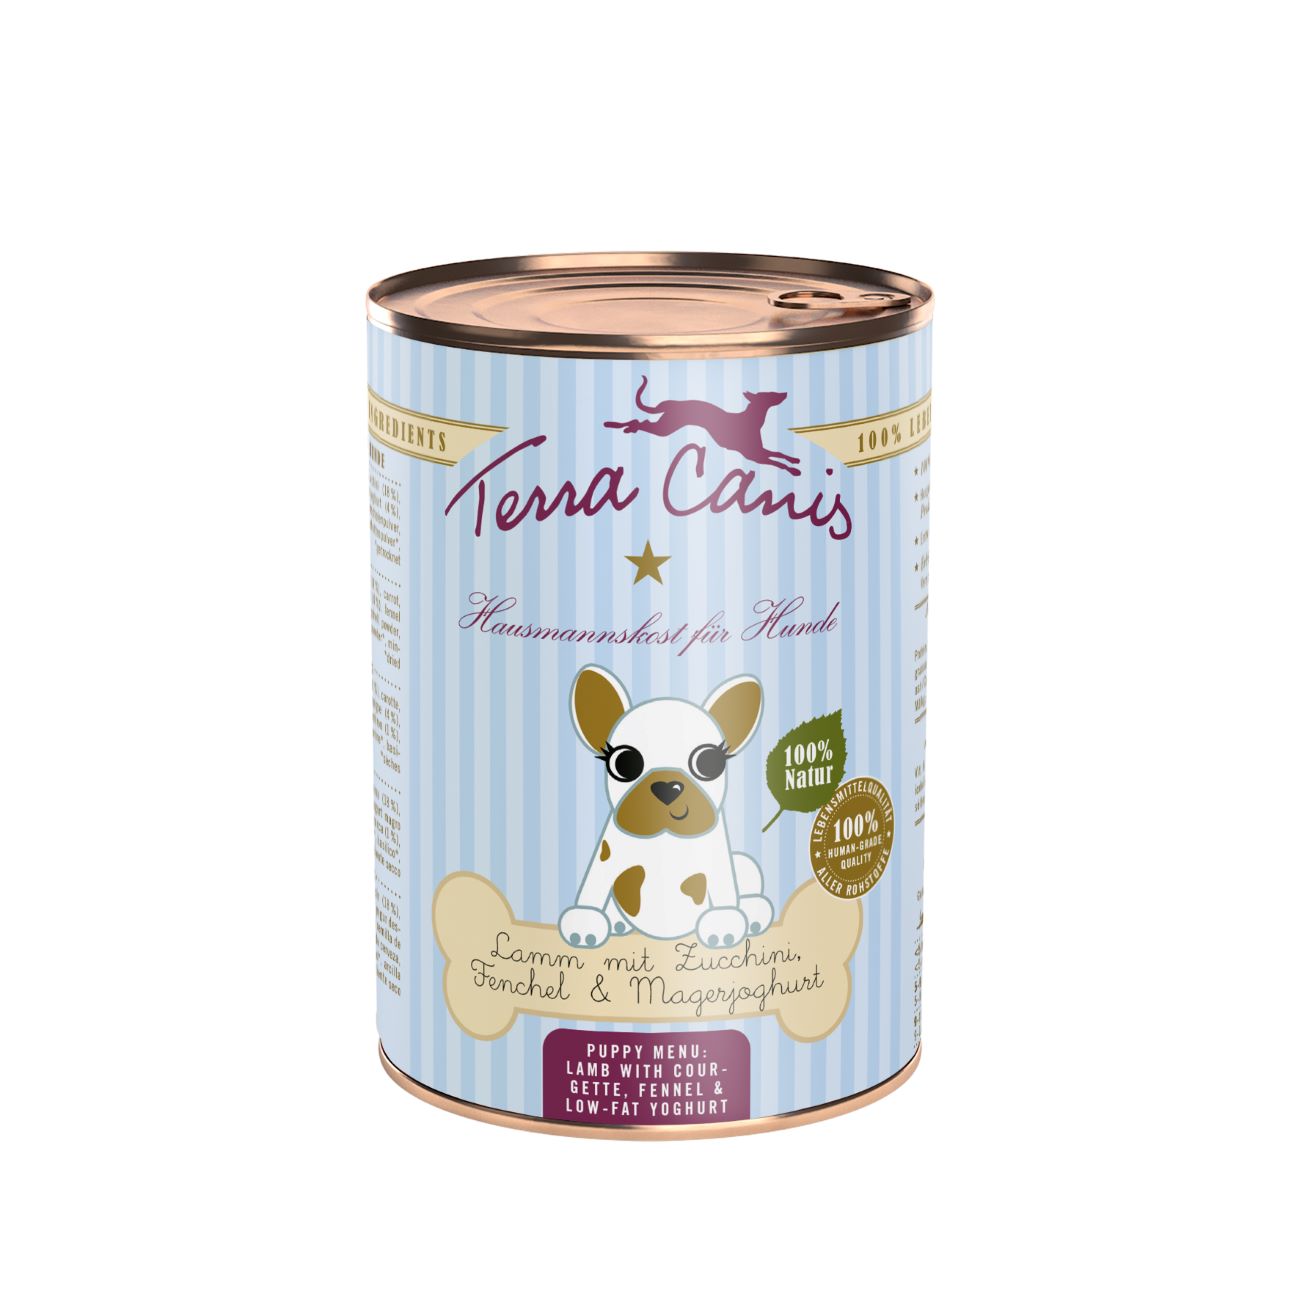 Terra Canis Welpe | Lamm mit Zucchini Fenchel & Magerjoghurt